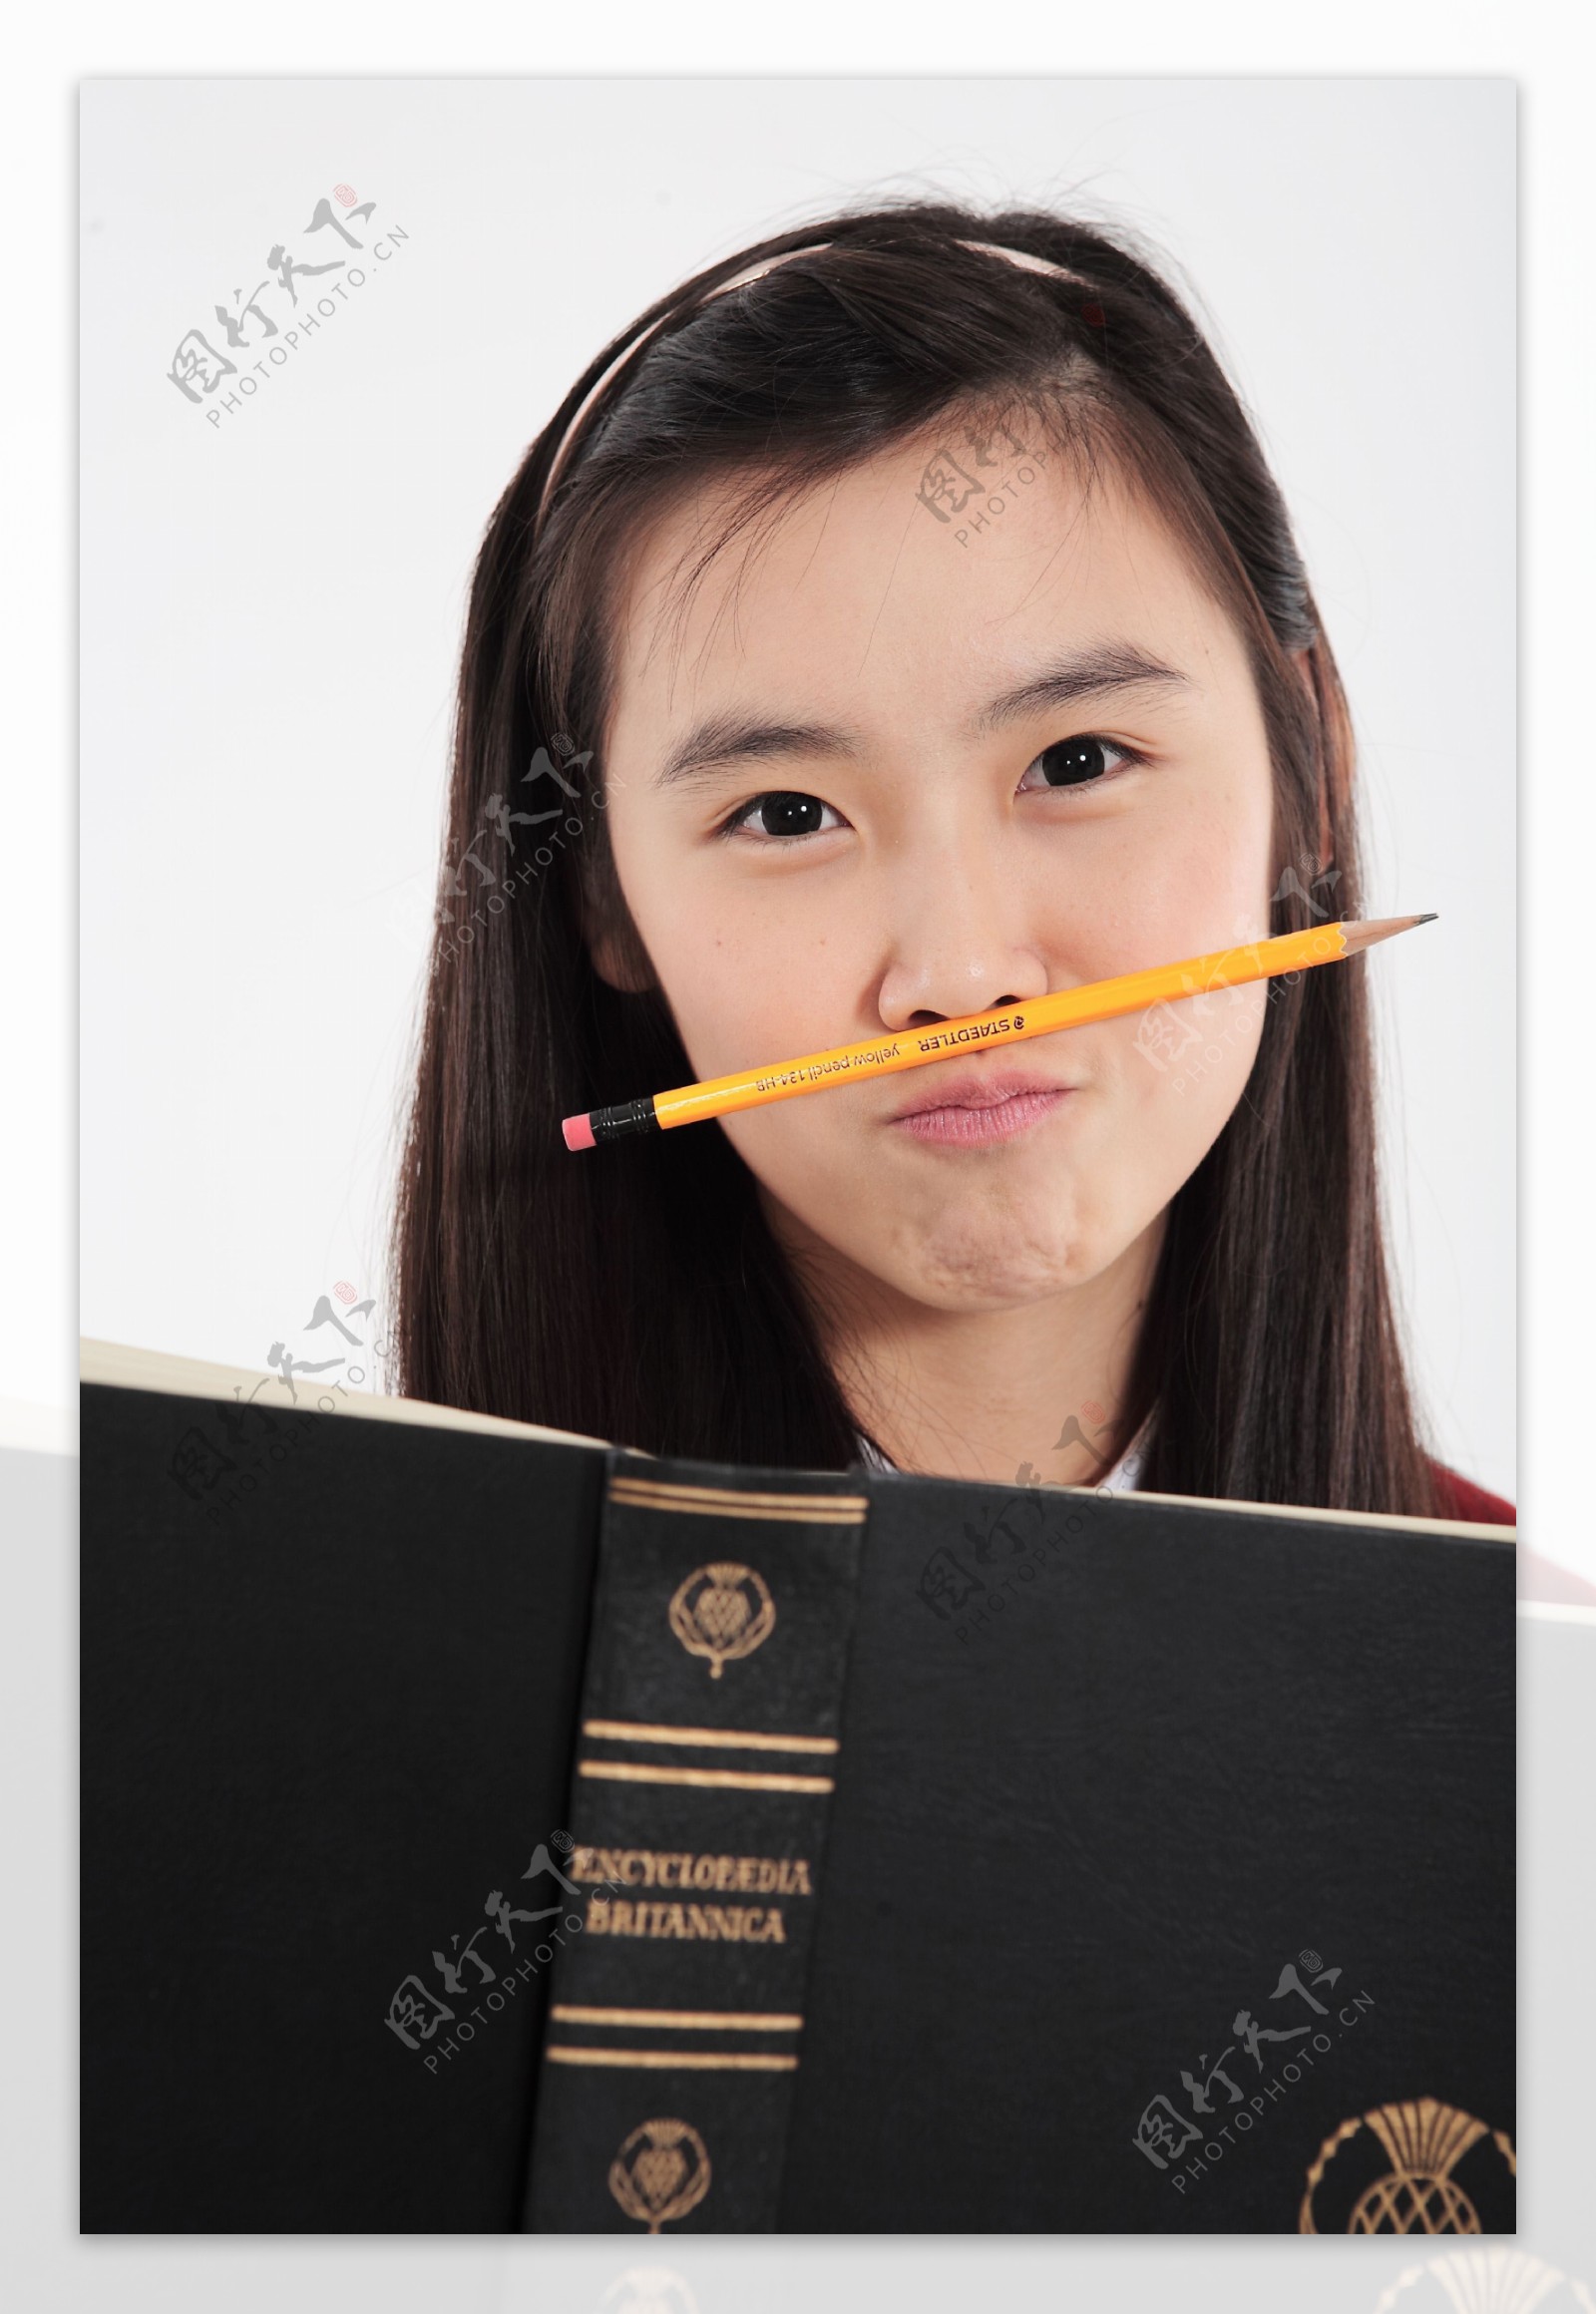 捧着书鼻子夹着铅笔的大眼睛女孩图片图片